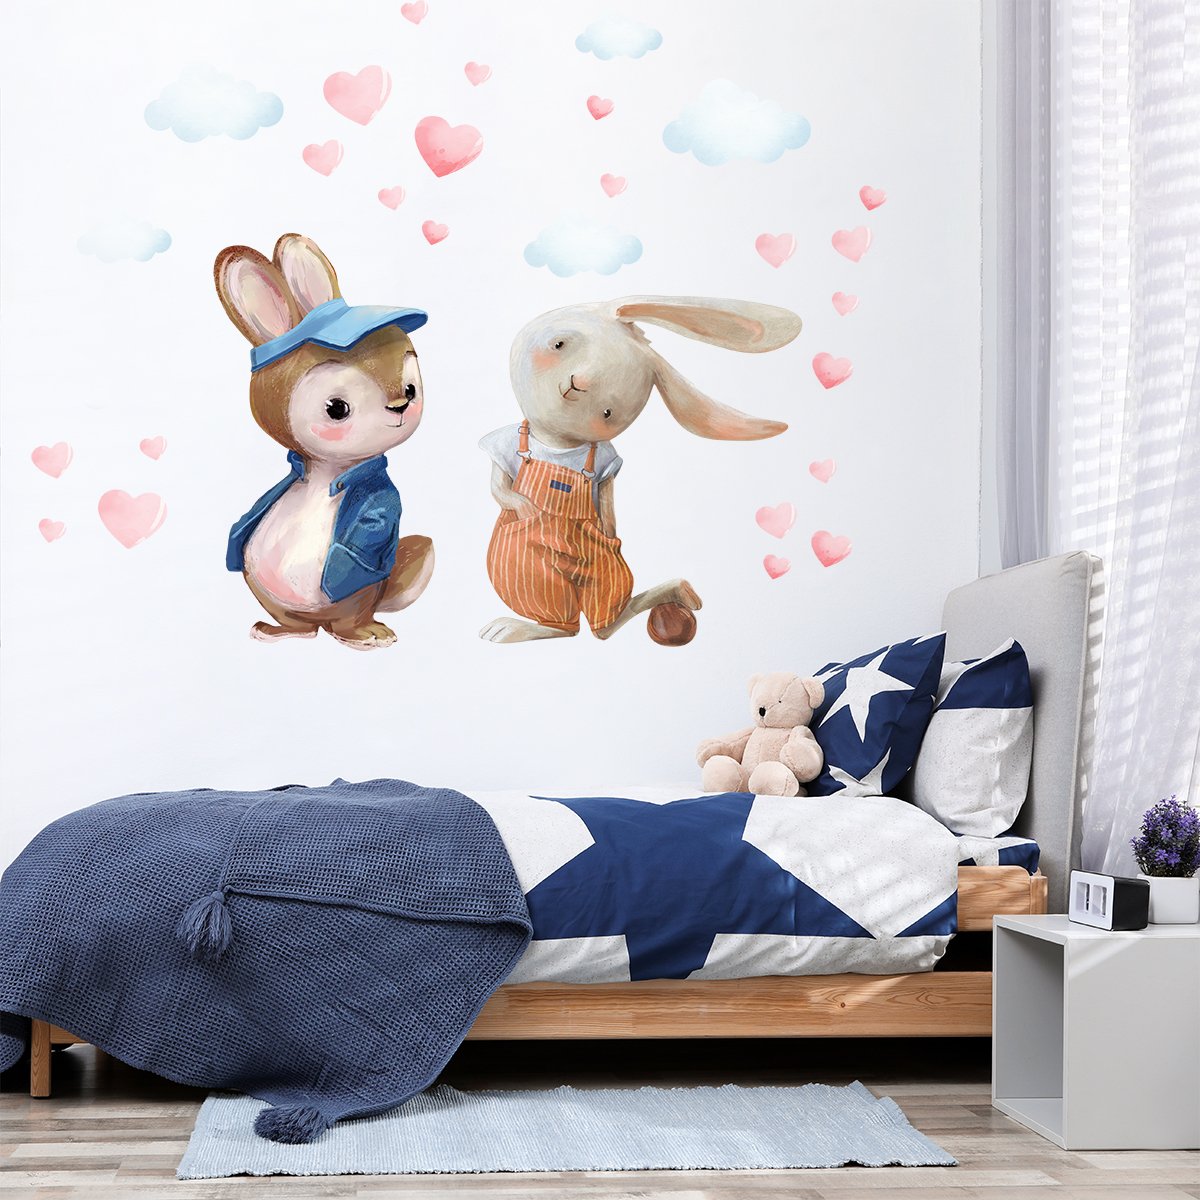 Naklejki na ścianę dla małego chłopca dwa króliki i chmury